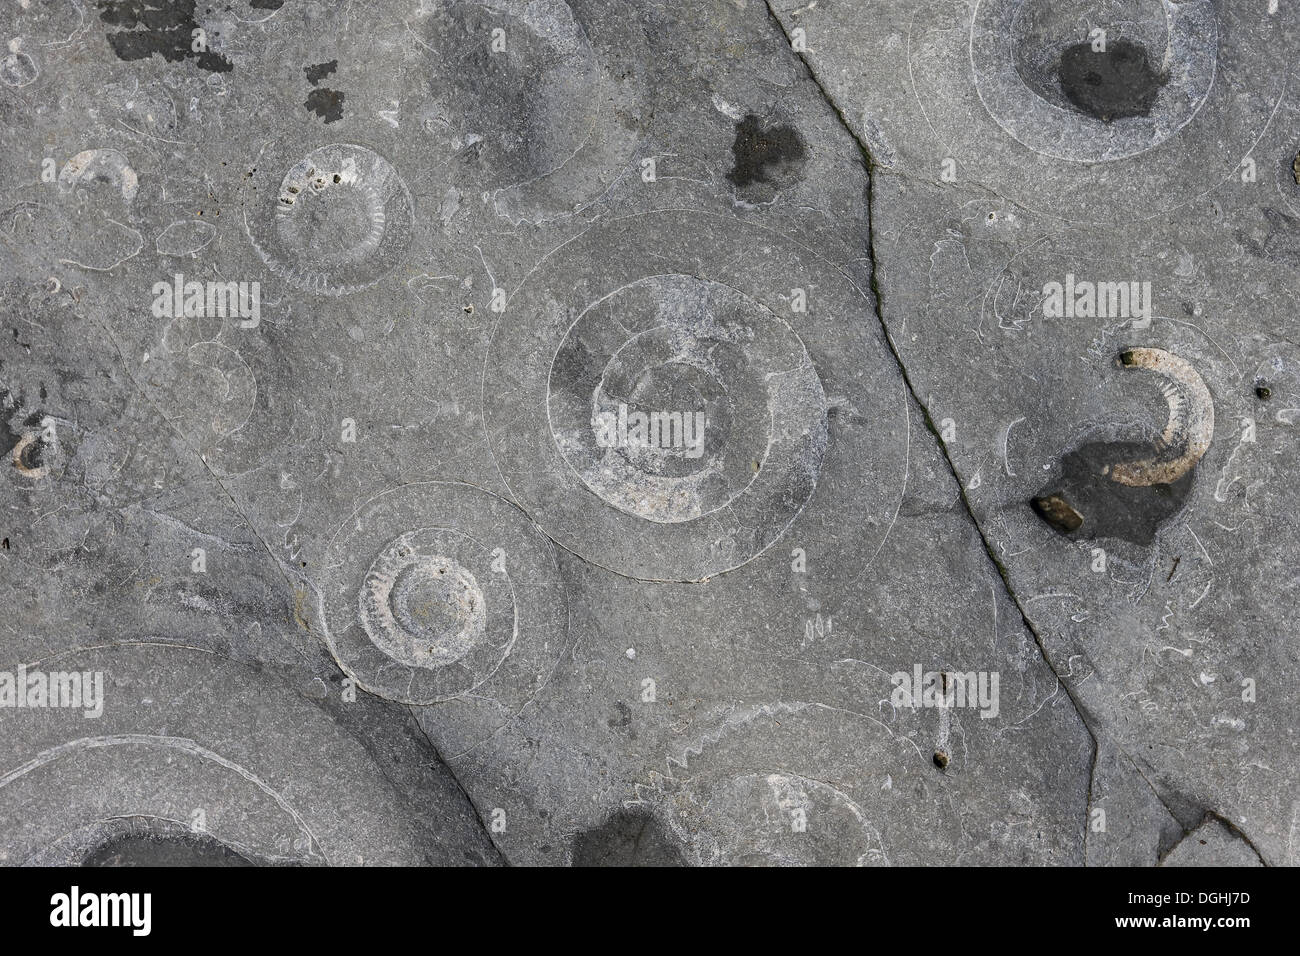 Ammonite (Coroniceras bucklandi) fossiles exposés dans la roche, plage de Monmouth, Lyme Regis, dans le Dorset, Angleterre, Mai Banque D'Images